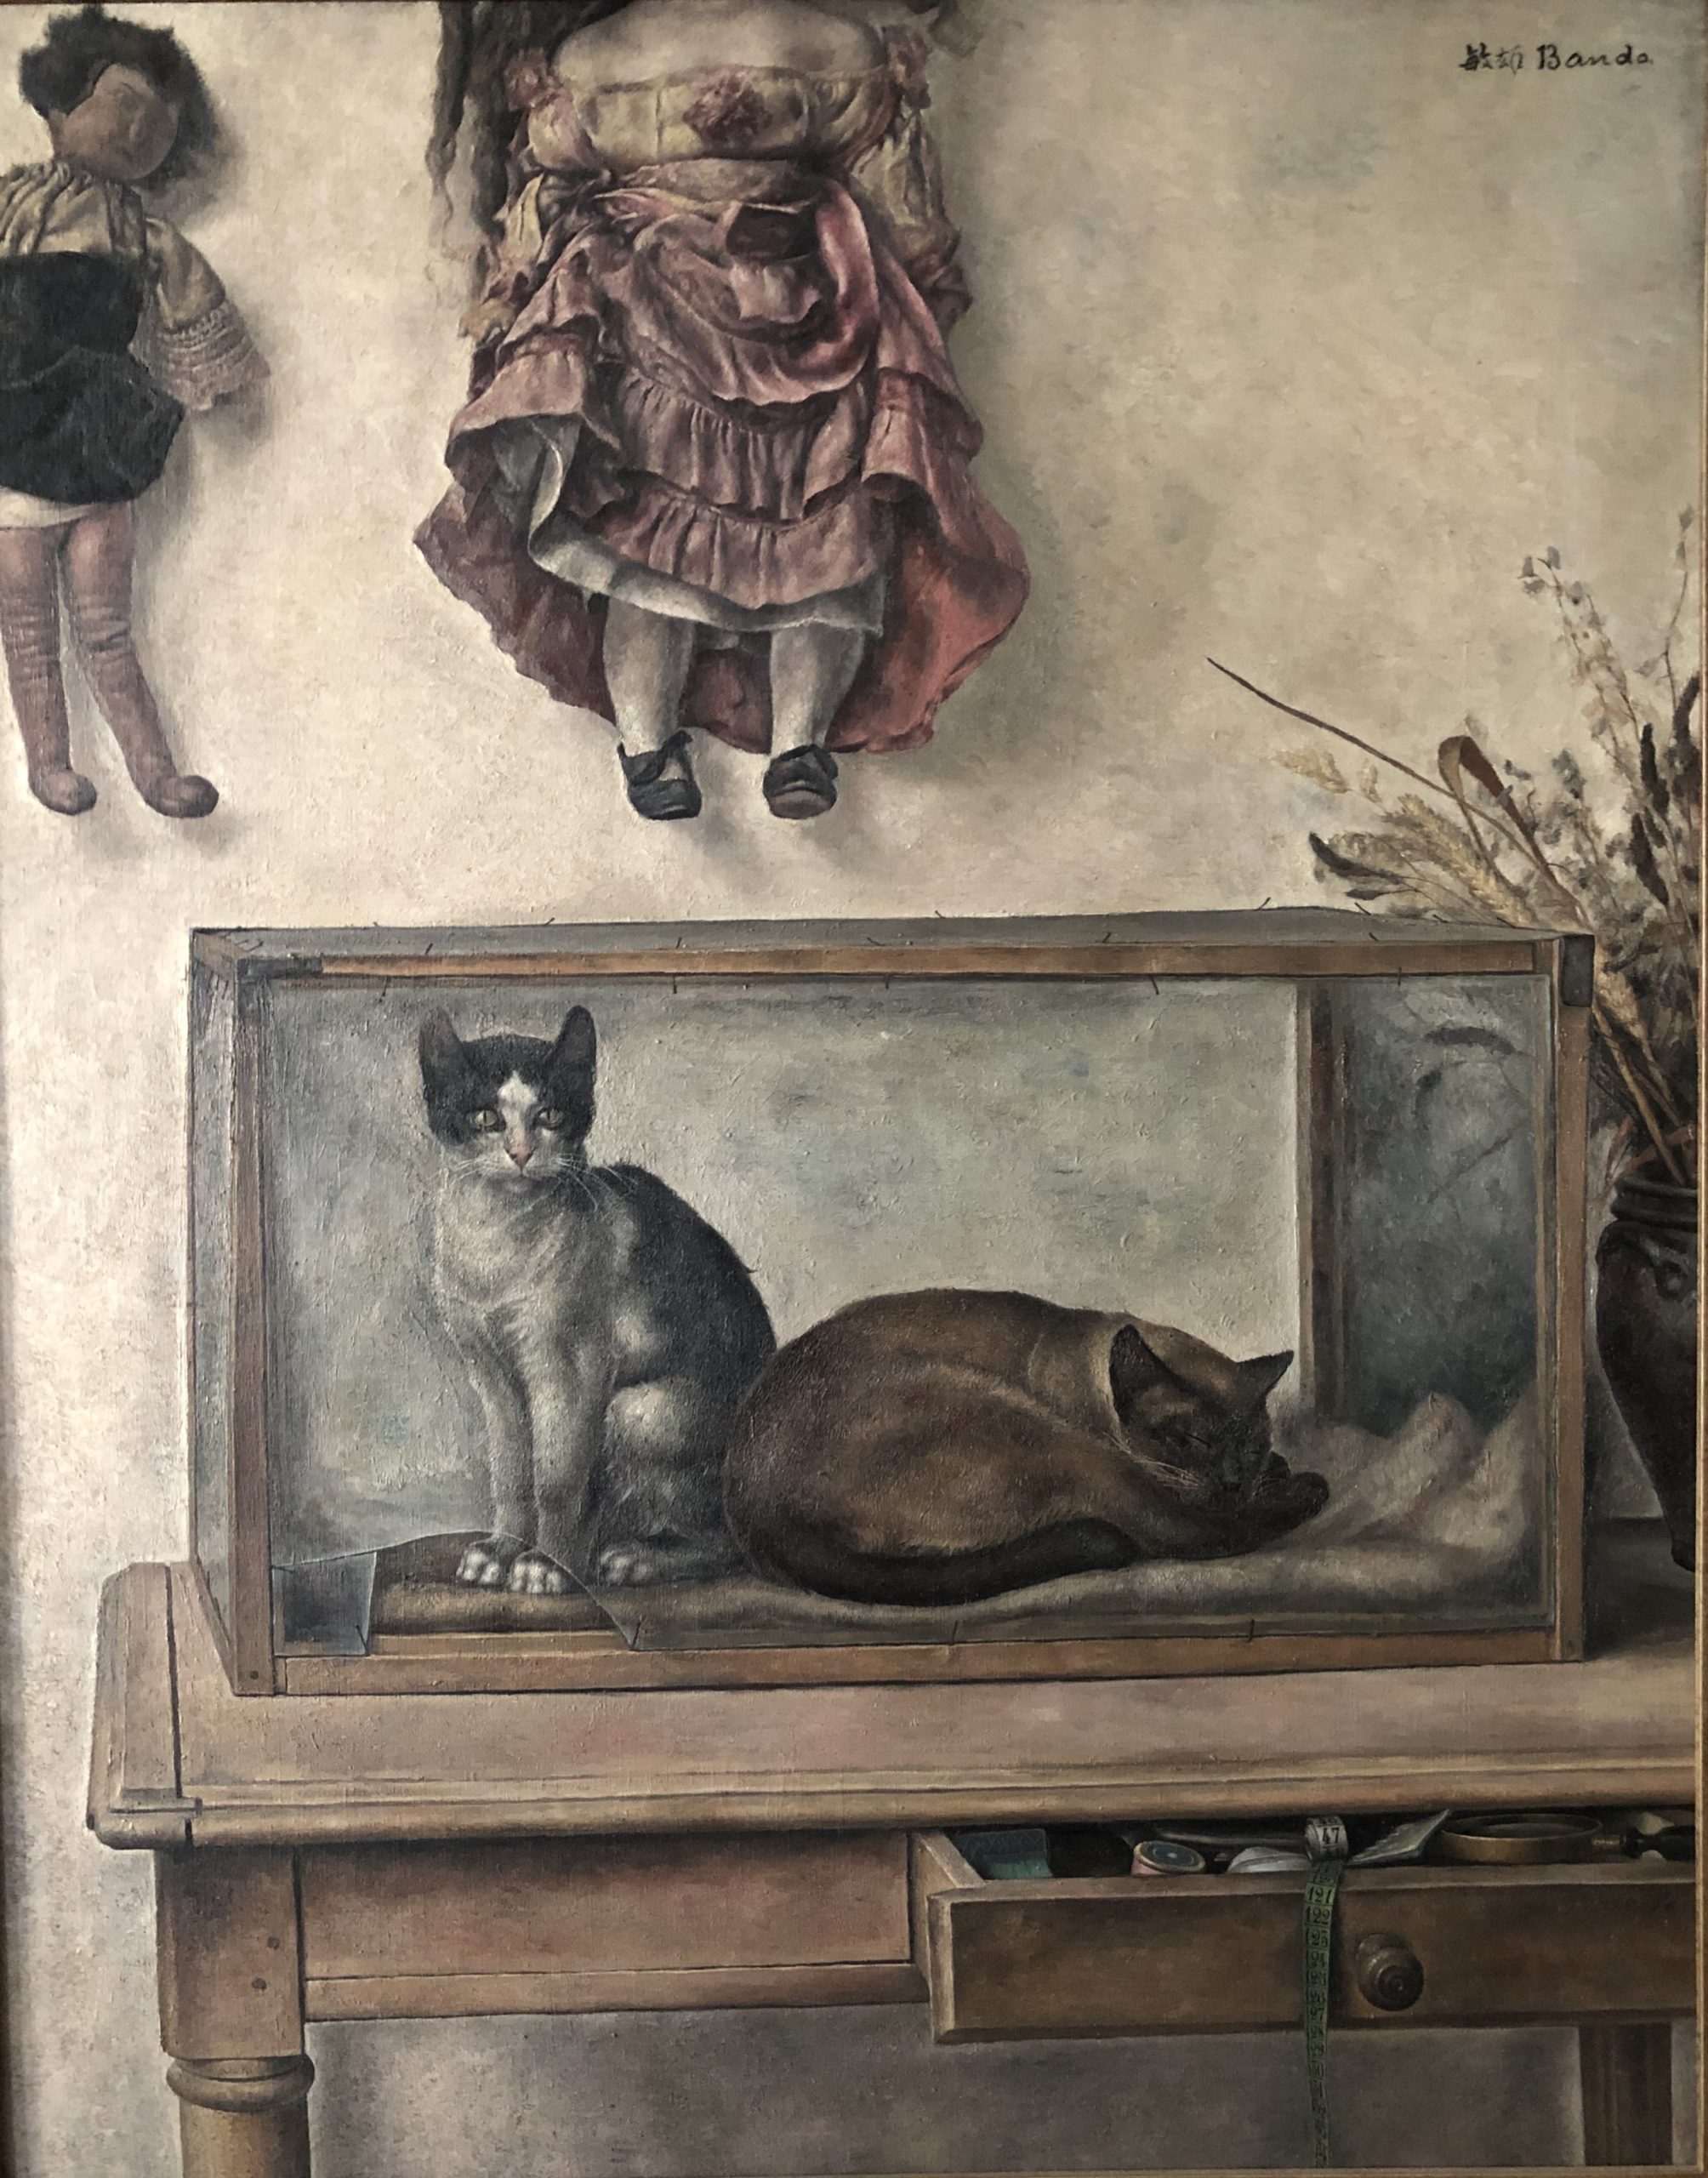 BANDO Nature morte aux chats 1930 Huile sur toile Coll. part.